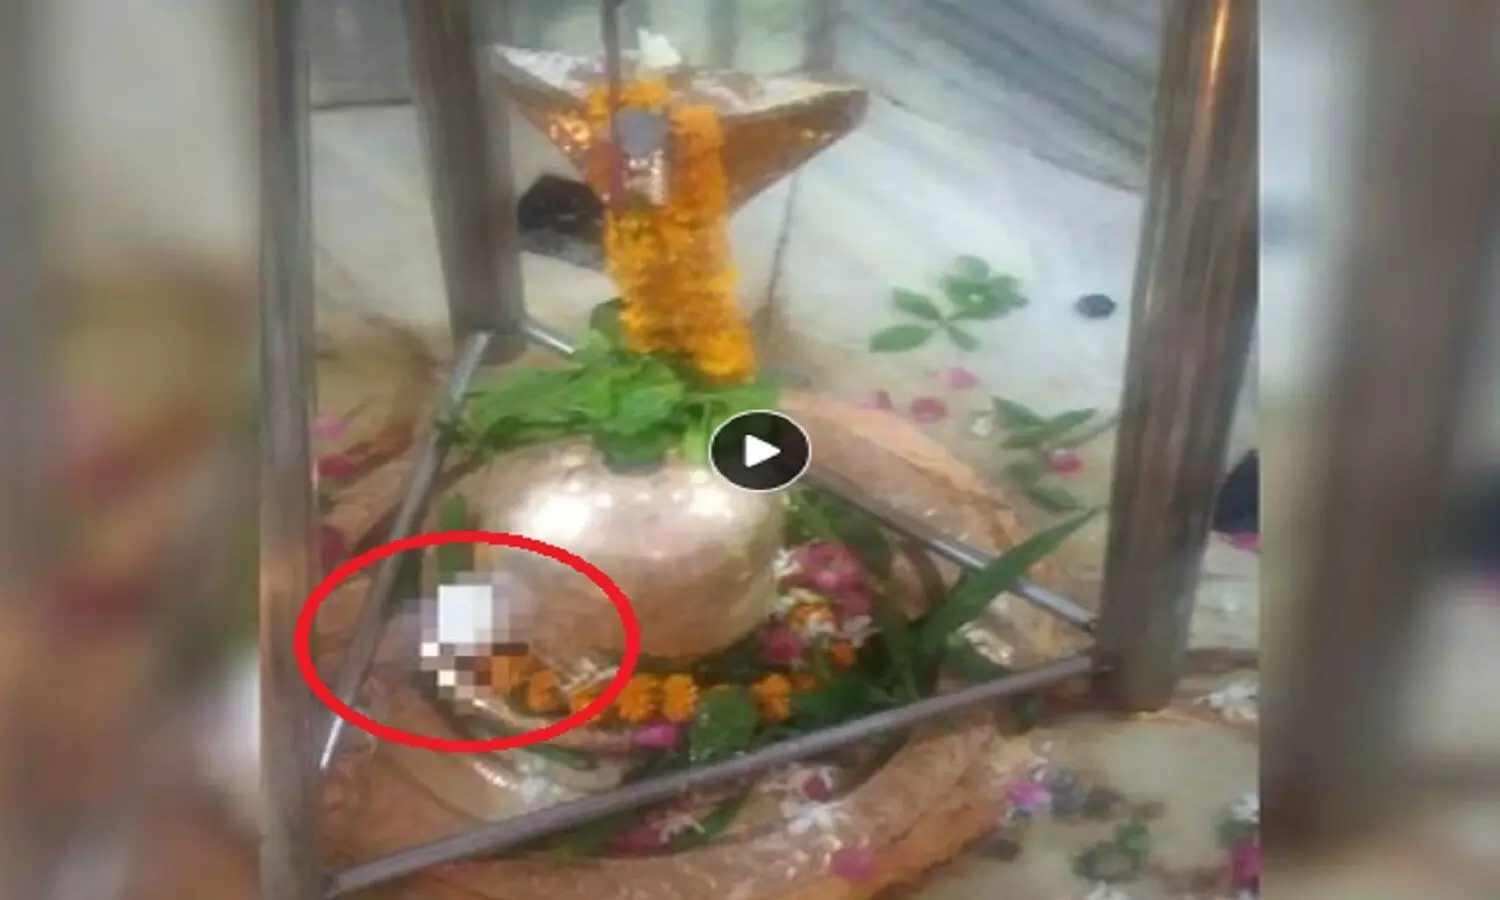 राक्षसों की निकृष्टता: कोटेश्वर महादेव मंदिर शिवलिंग में अंडा फेंका, हिन्दुओं को उकसाने की कोशिश